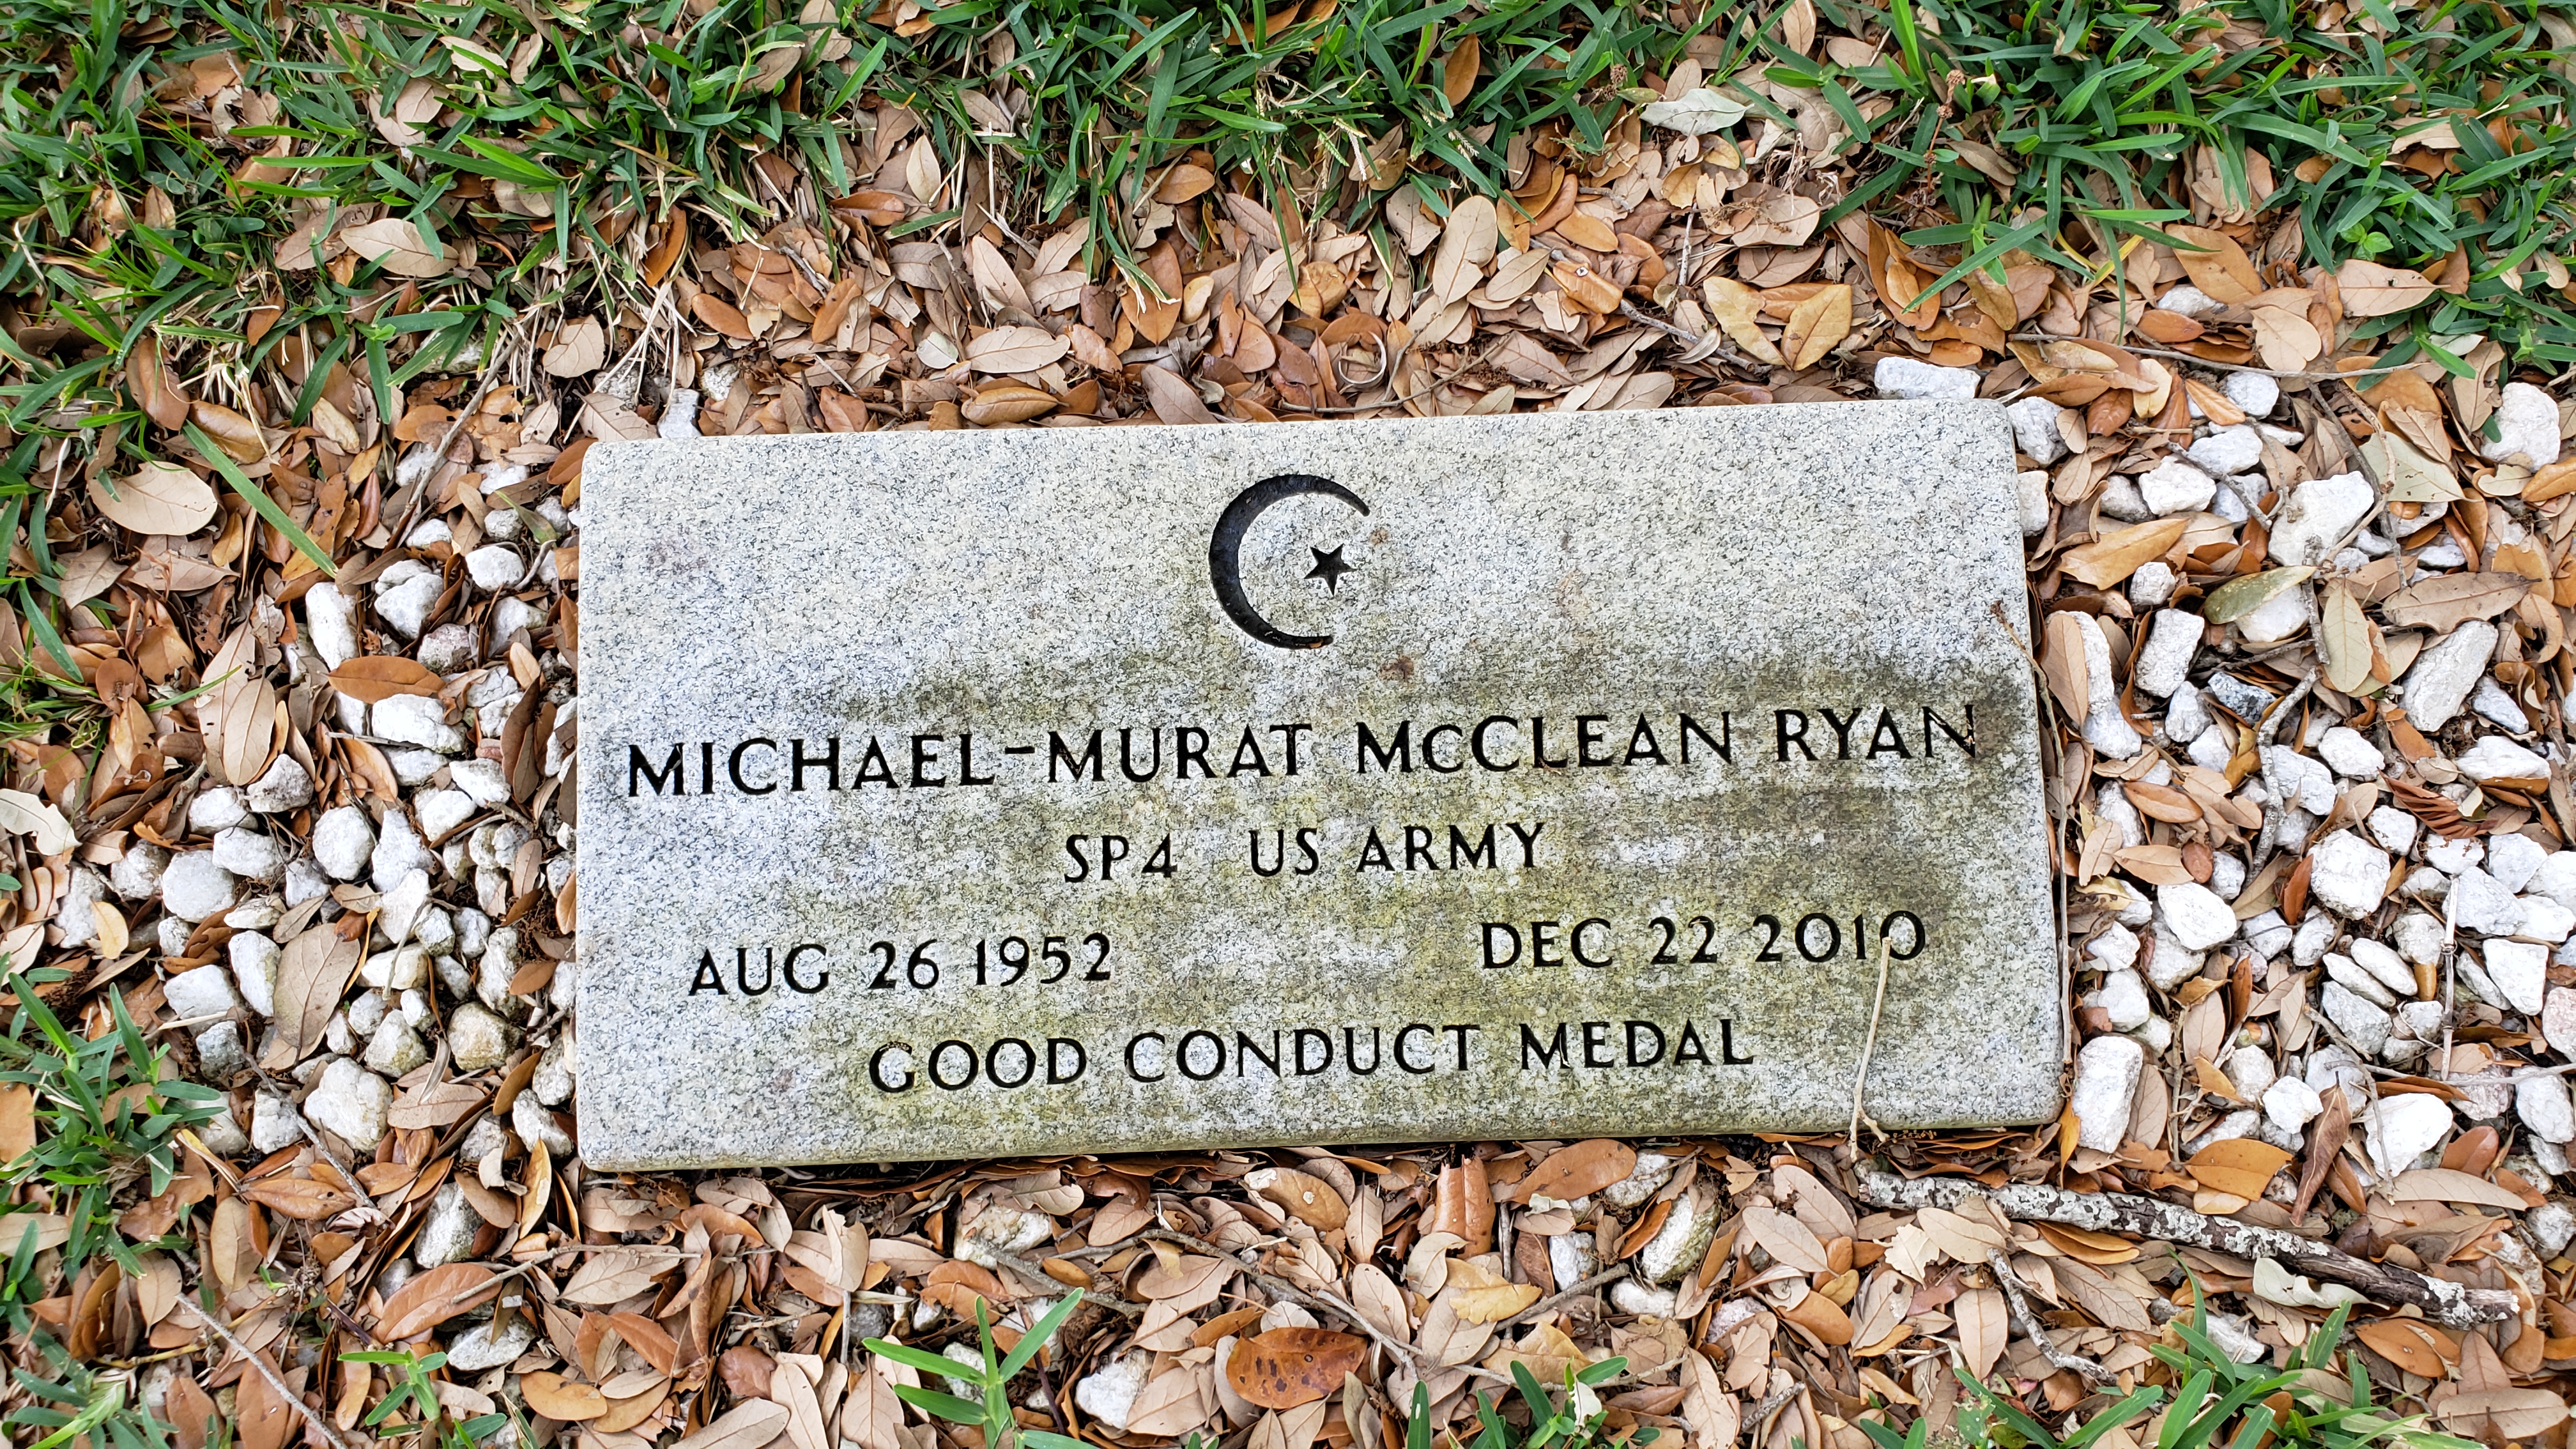 Michael-Murat McClean Ryan